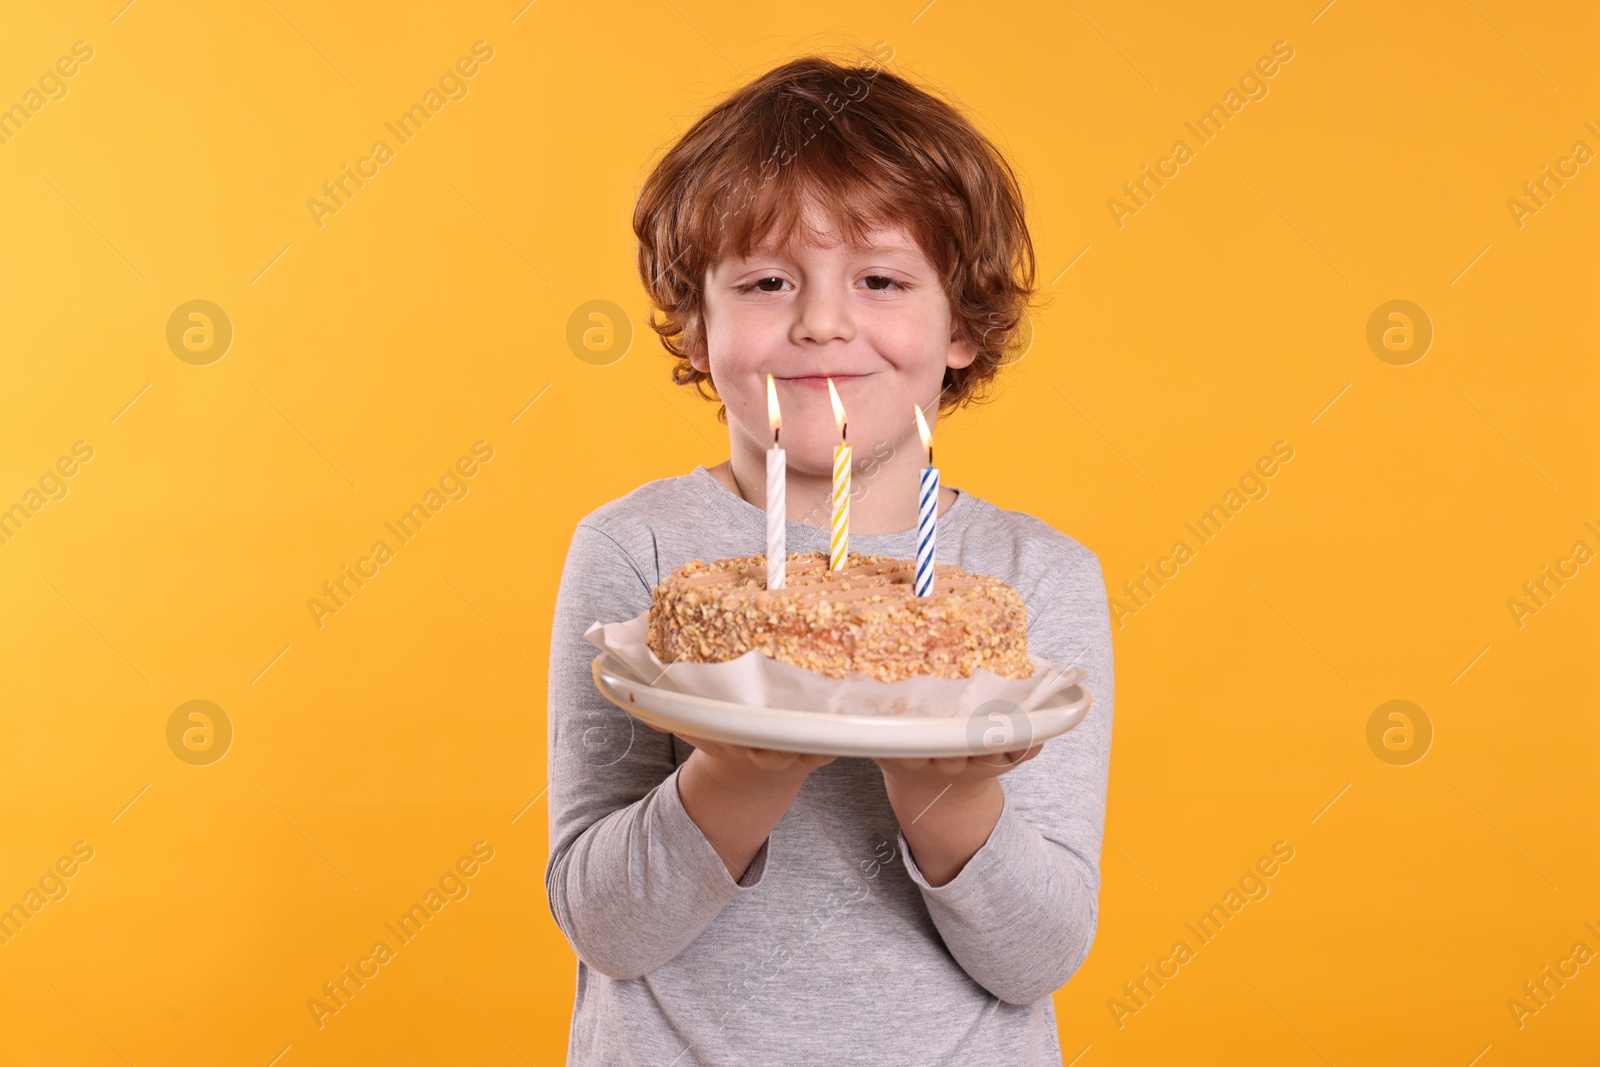 Photo of Birthday celebration. Cute little boy holding tasty cake with burning candles on orange background